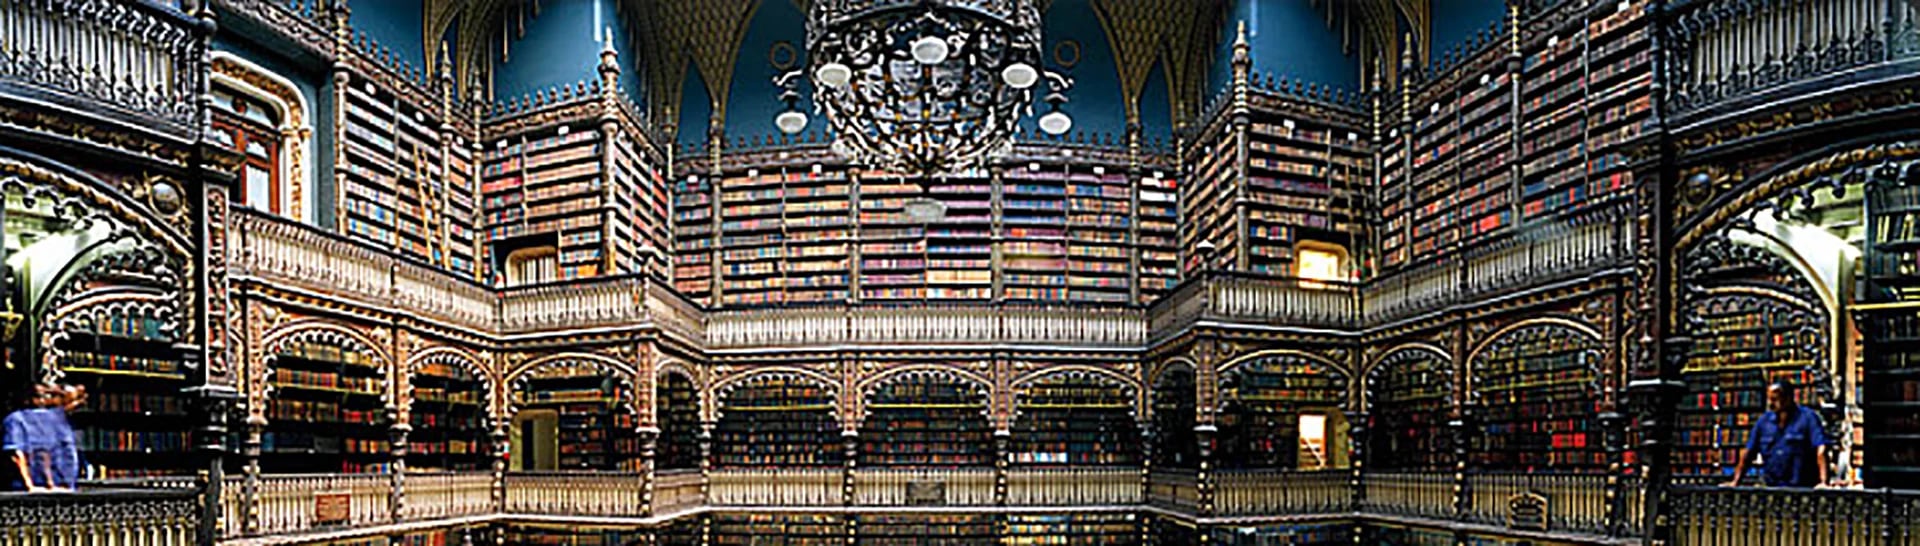 La biblioteca fue construida por inmigrantes portugueses hace siglos (Página web de la biblioteca)